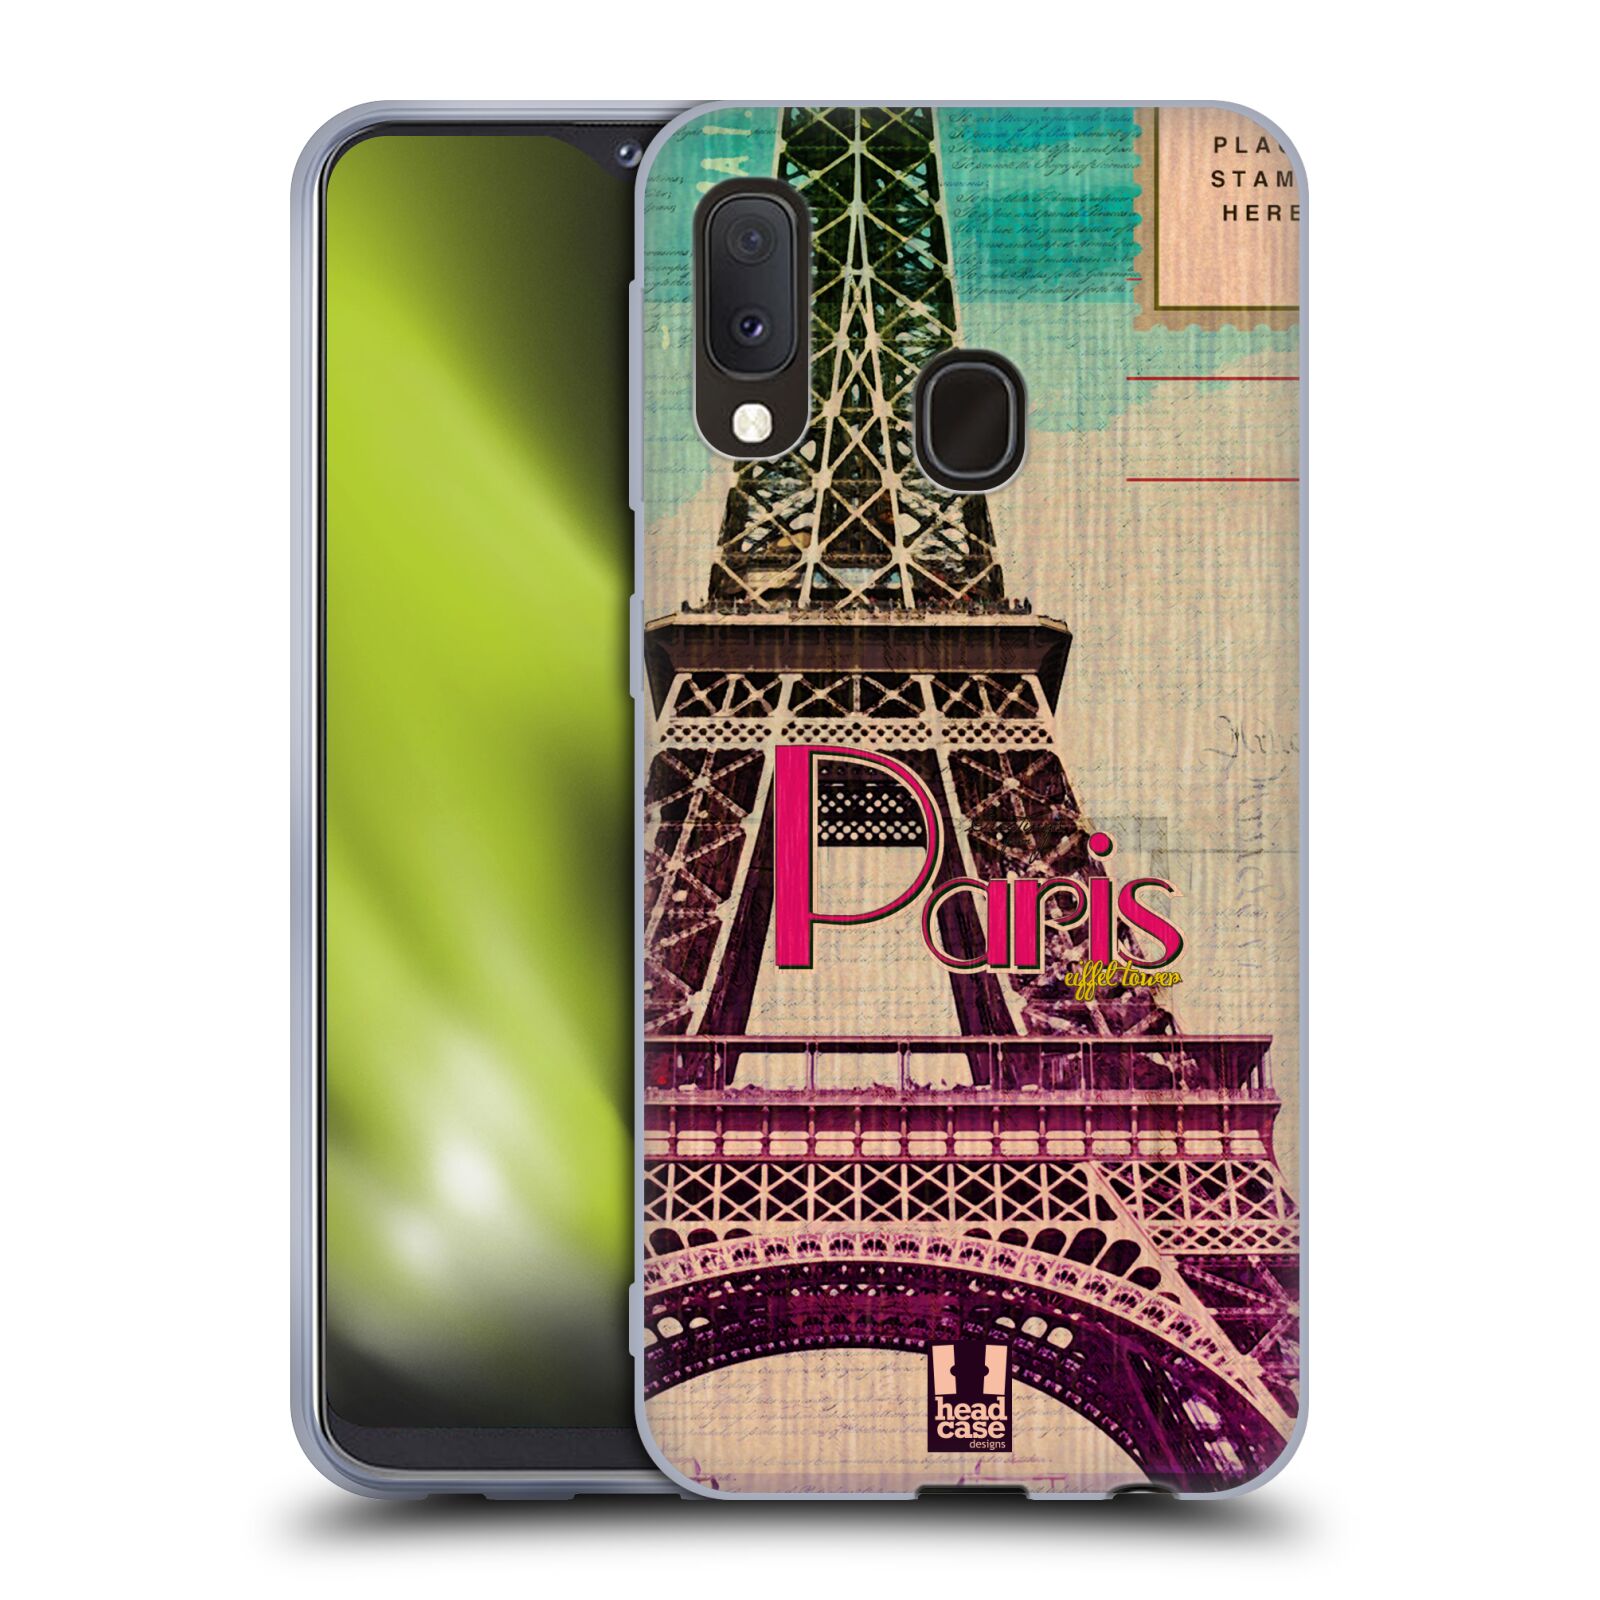 Silikonové pouzdro na mobil Samsung Galaxy A20e - Head Case - PARIS VINTAGE (Silikonový kryt, obal, pouzdro na mobilní telefon Samsung Galaxy A20e A202F Dual SIM s motivem PARIS VINTAGE)